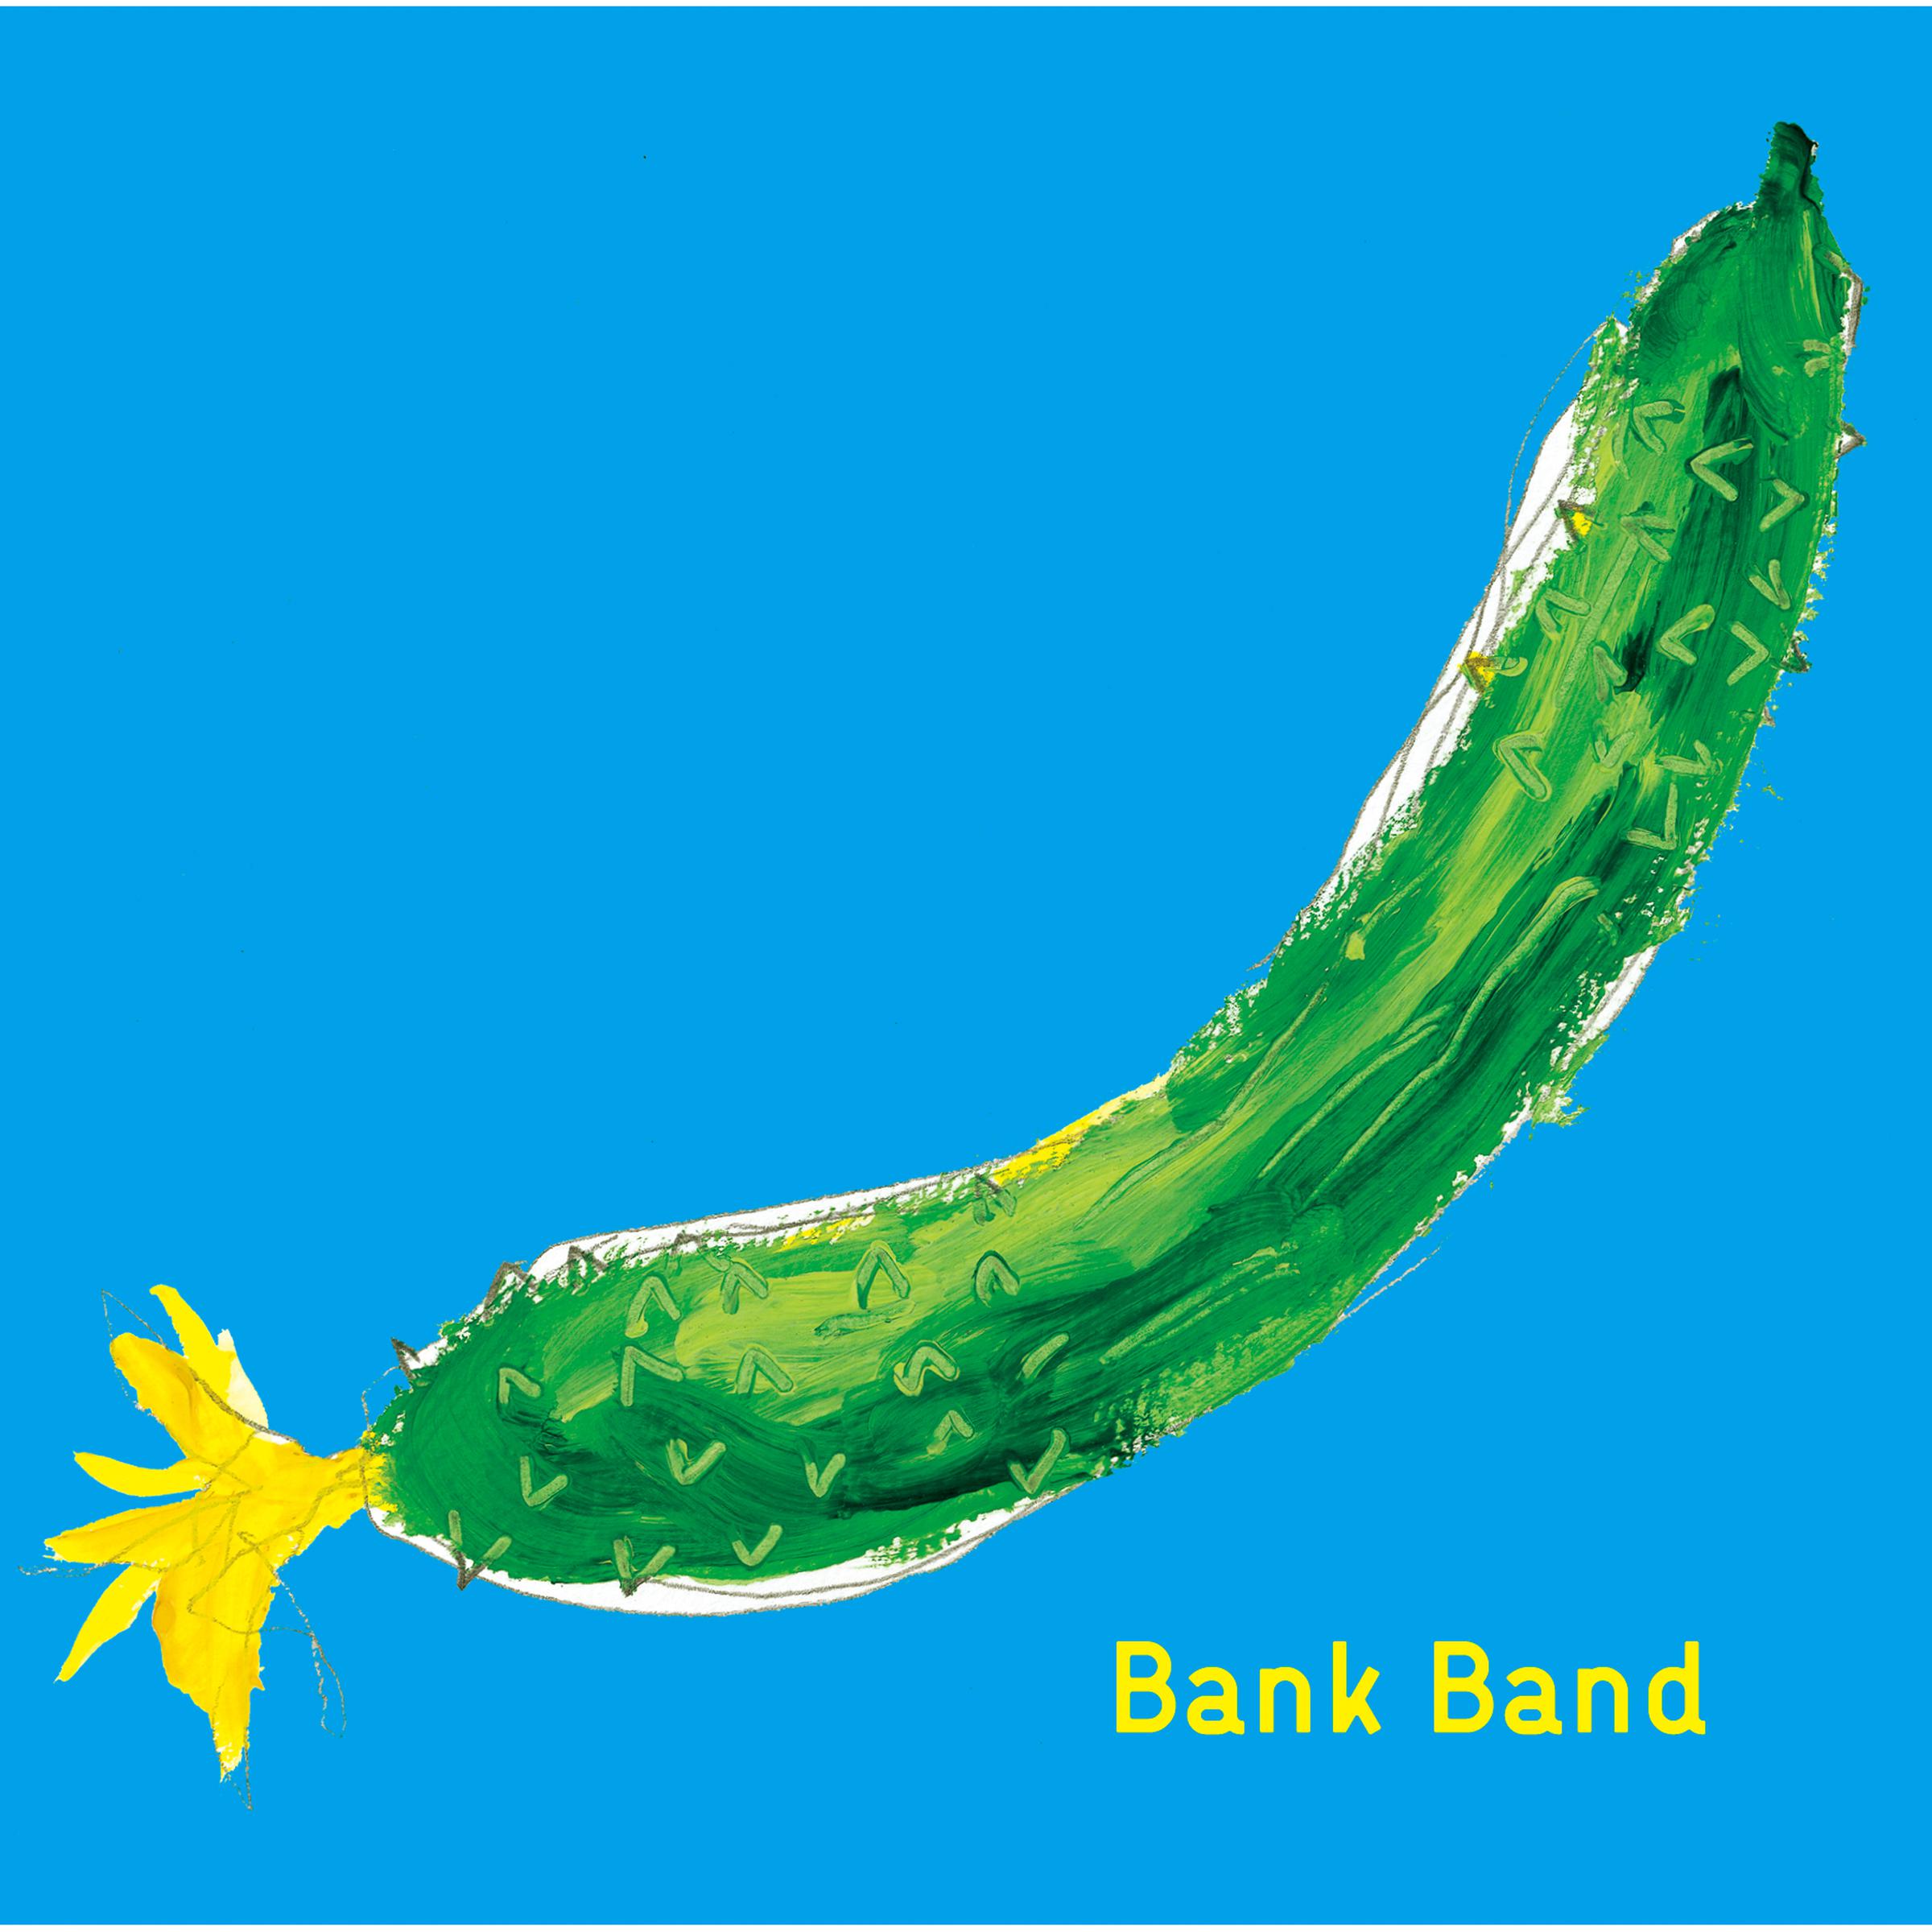 BANK BAND - 糸 (中岛みゆき)